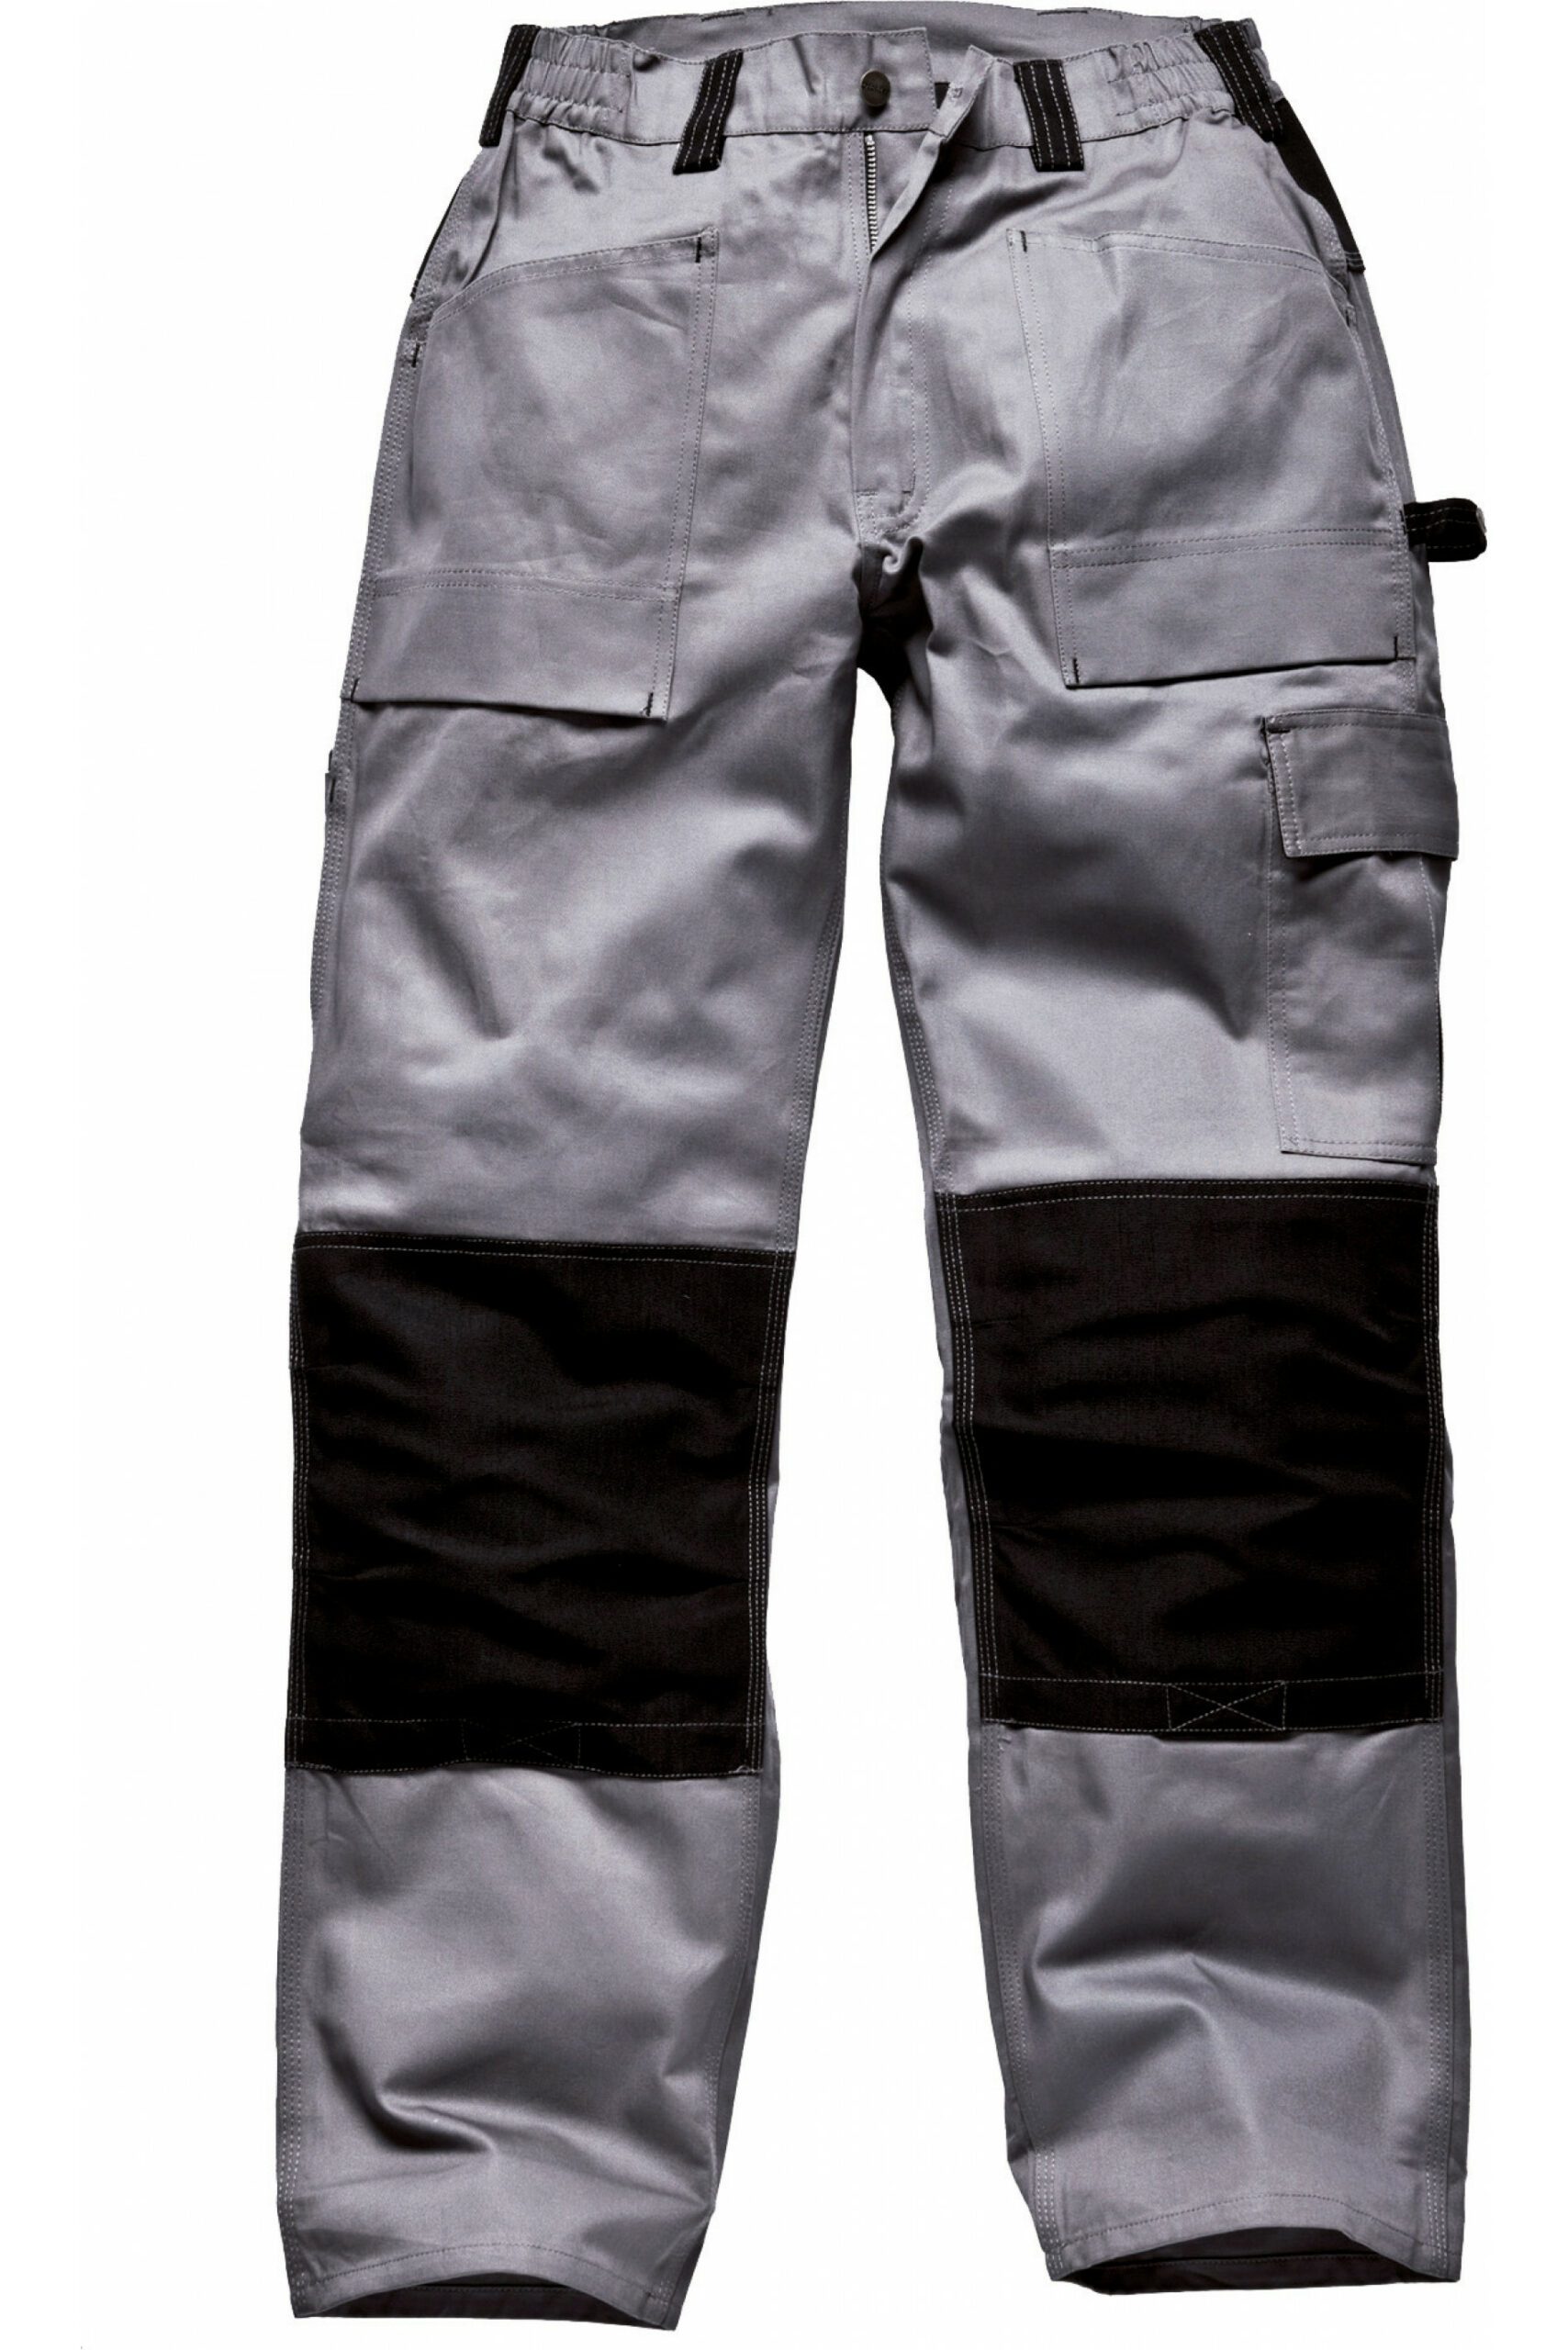 Pantalon genouillières Cordura gris/noir